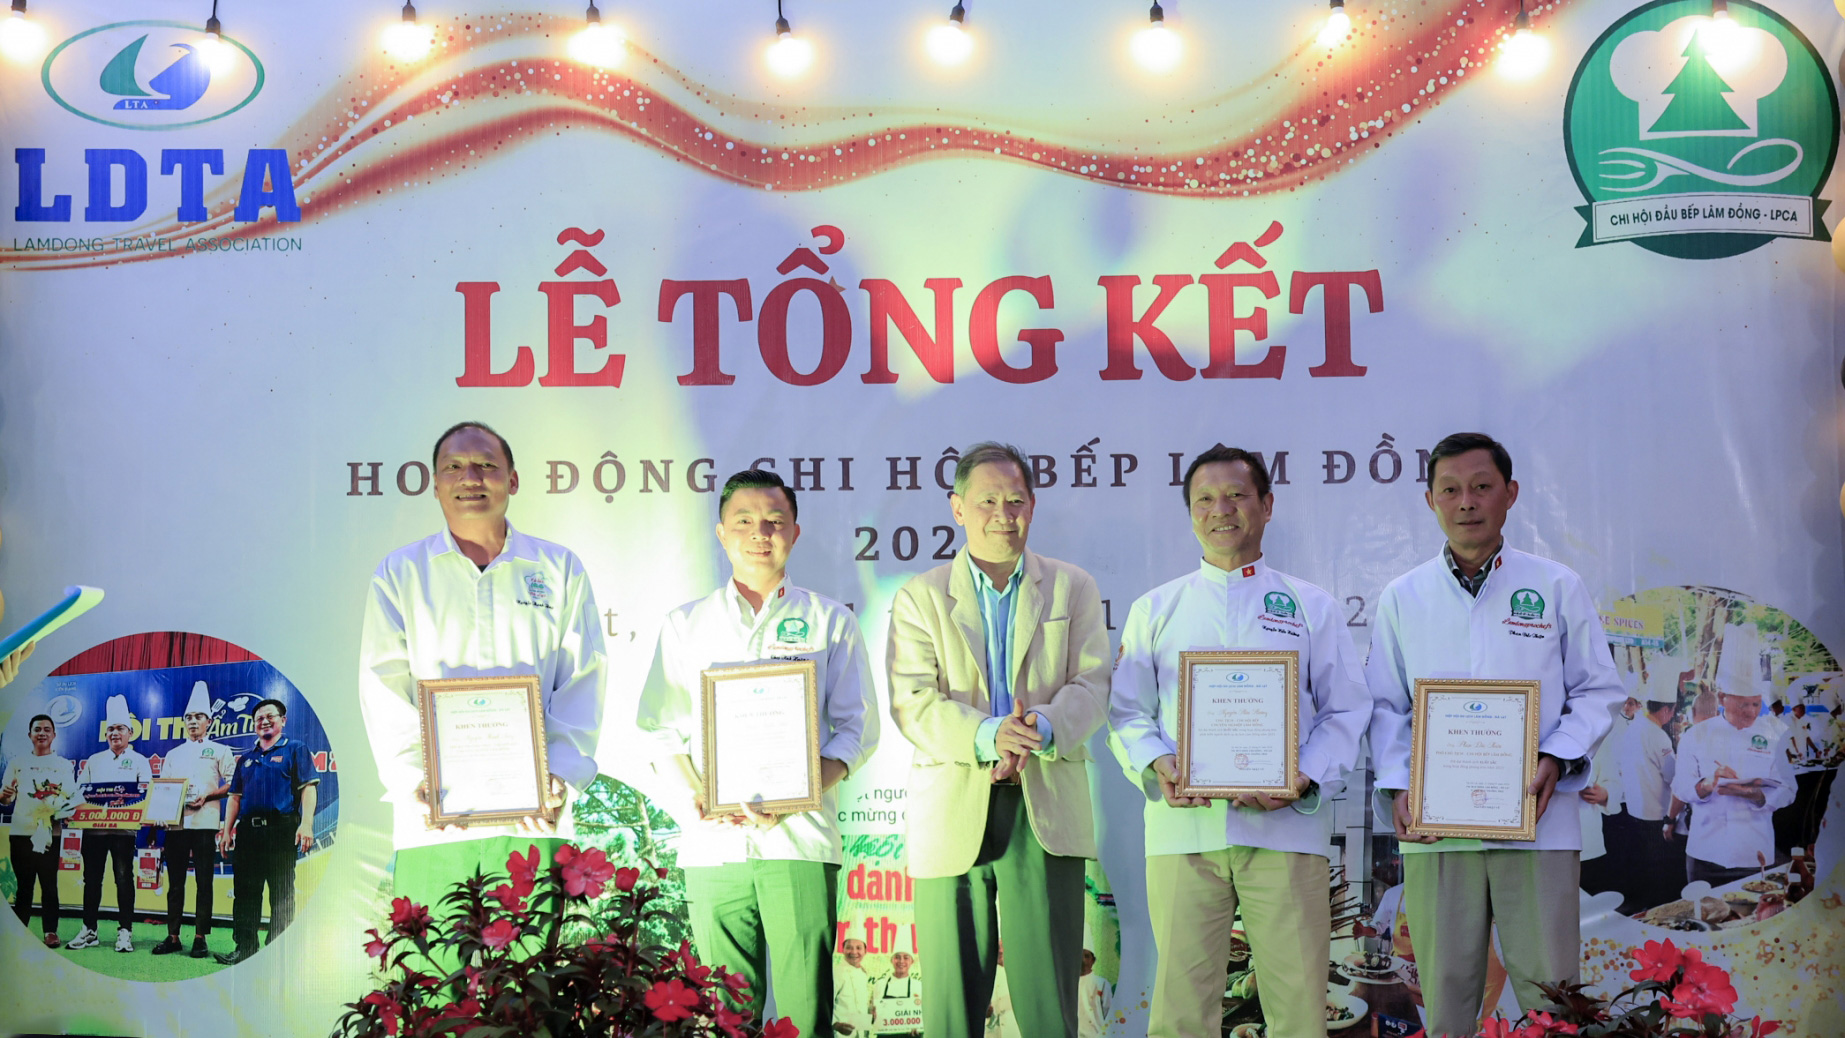 Chi hội Bếp chuyên nghiệp Lâm Đồng tổng kết hoạt động năm 2023